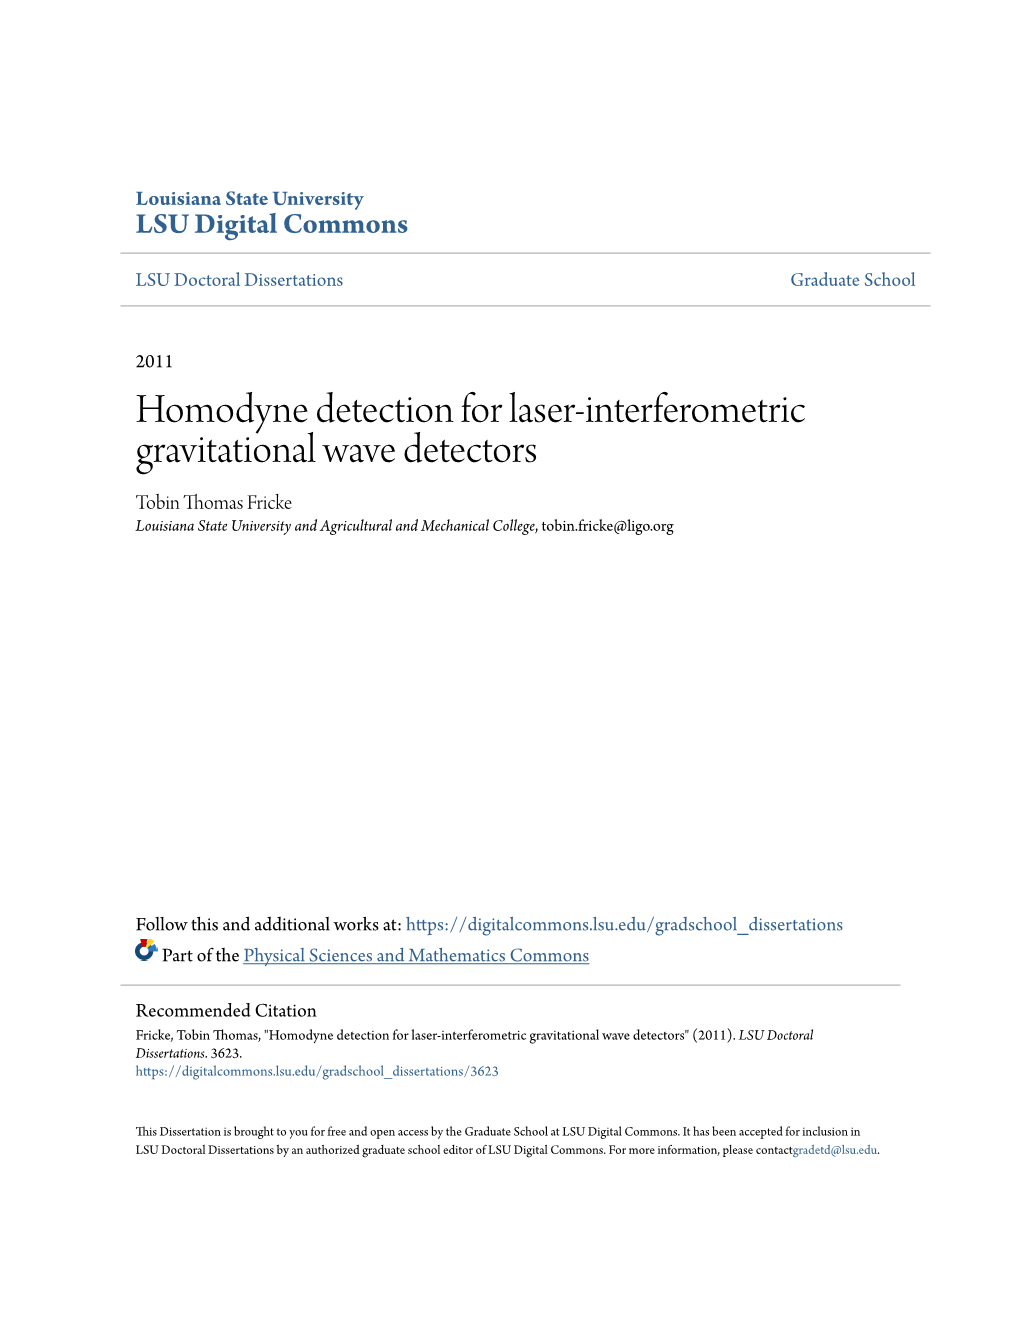 Homodyne Detection for Laser-Interferometric Gravitational